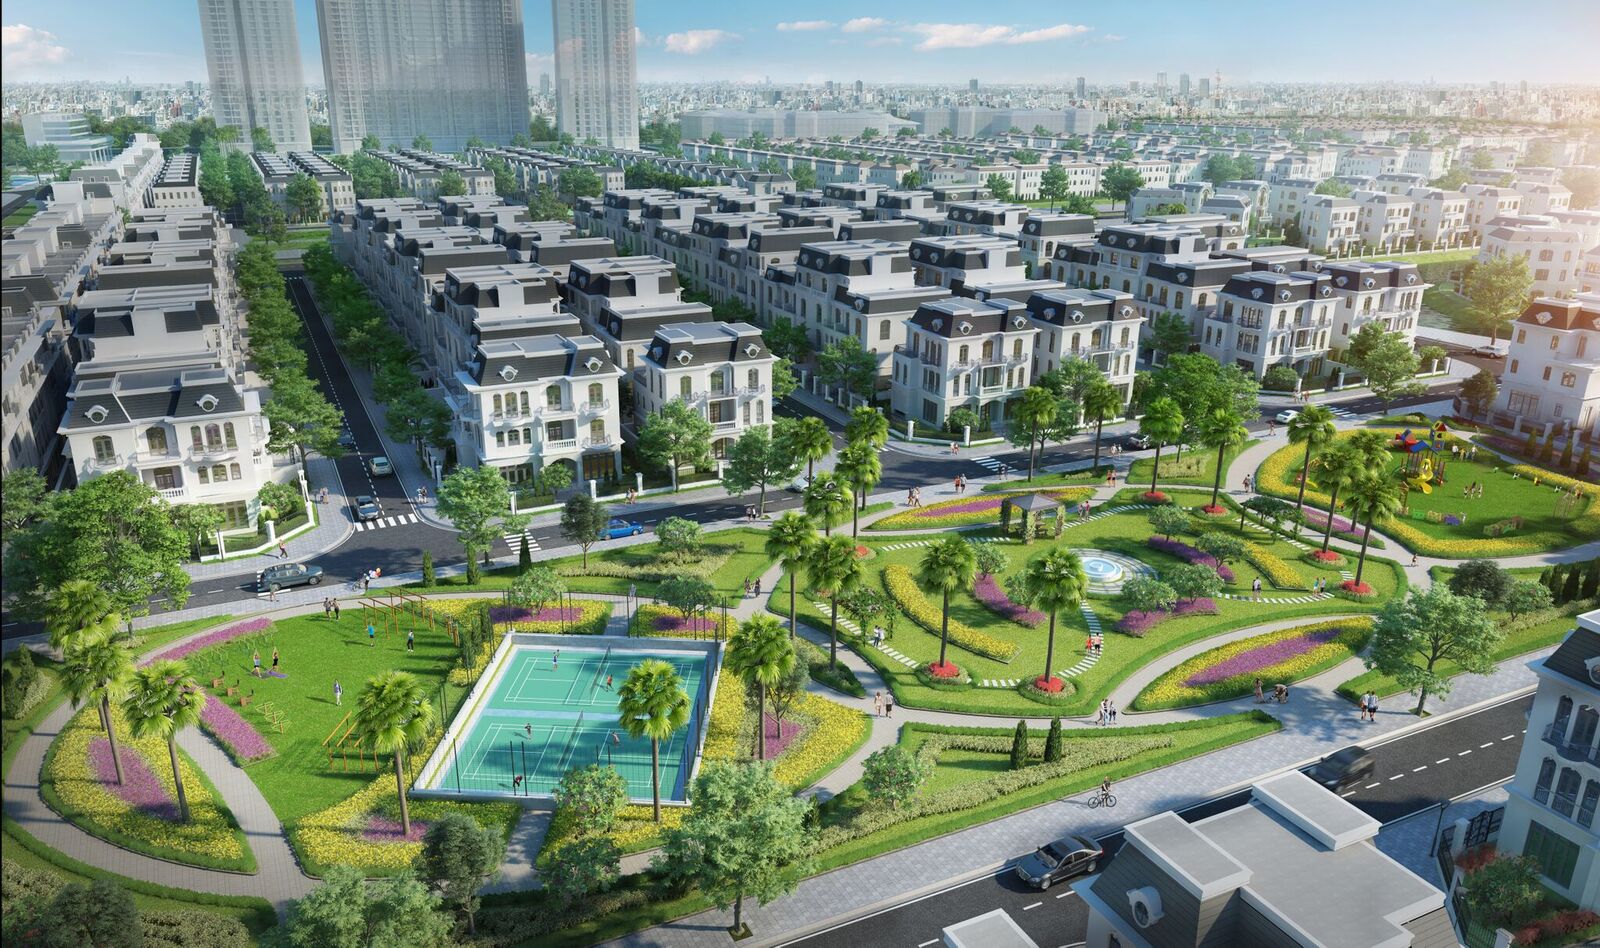 Hé lộ thông tin dự án Vinhomes Star City Thanh Hóa - Khu đô thị mới của cư dân xứ Thanh